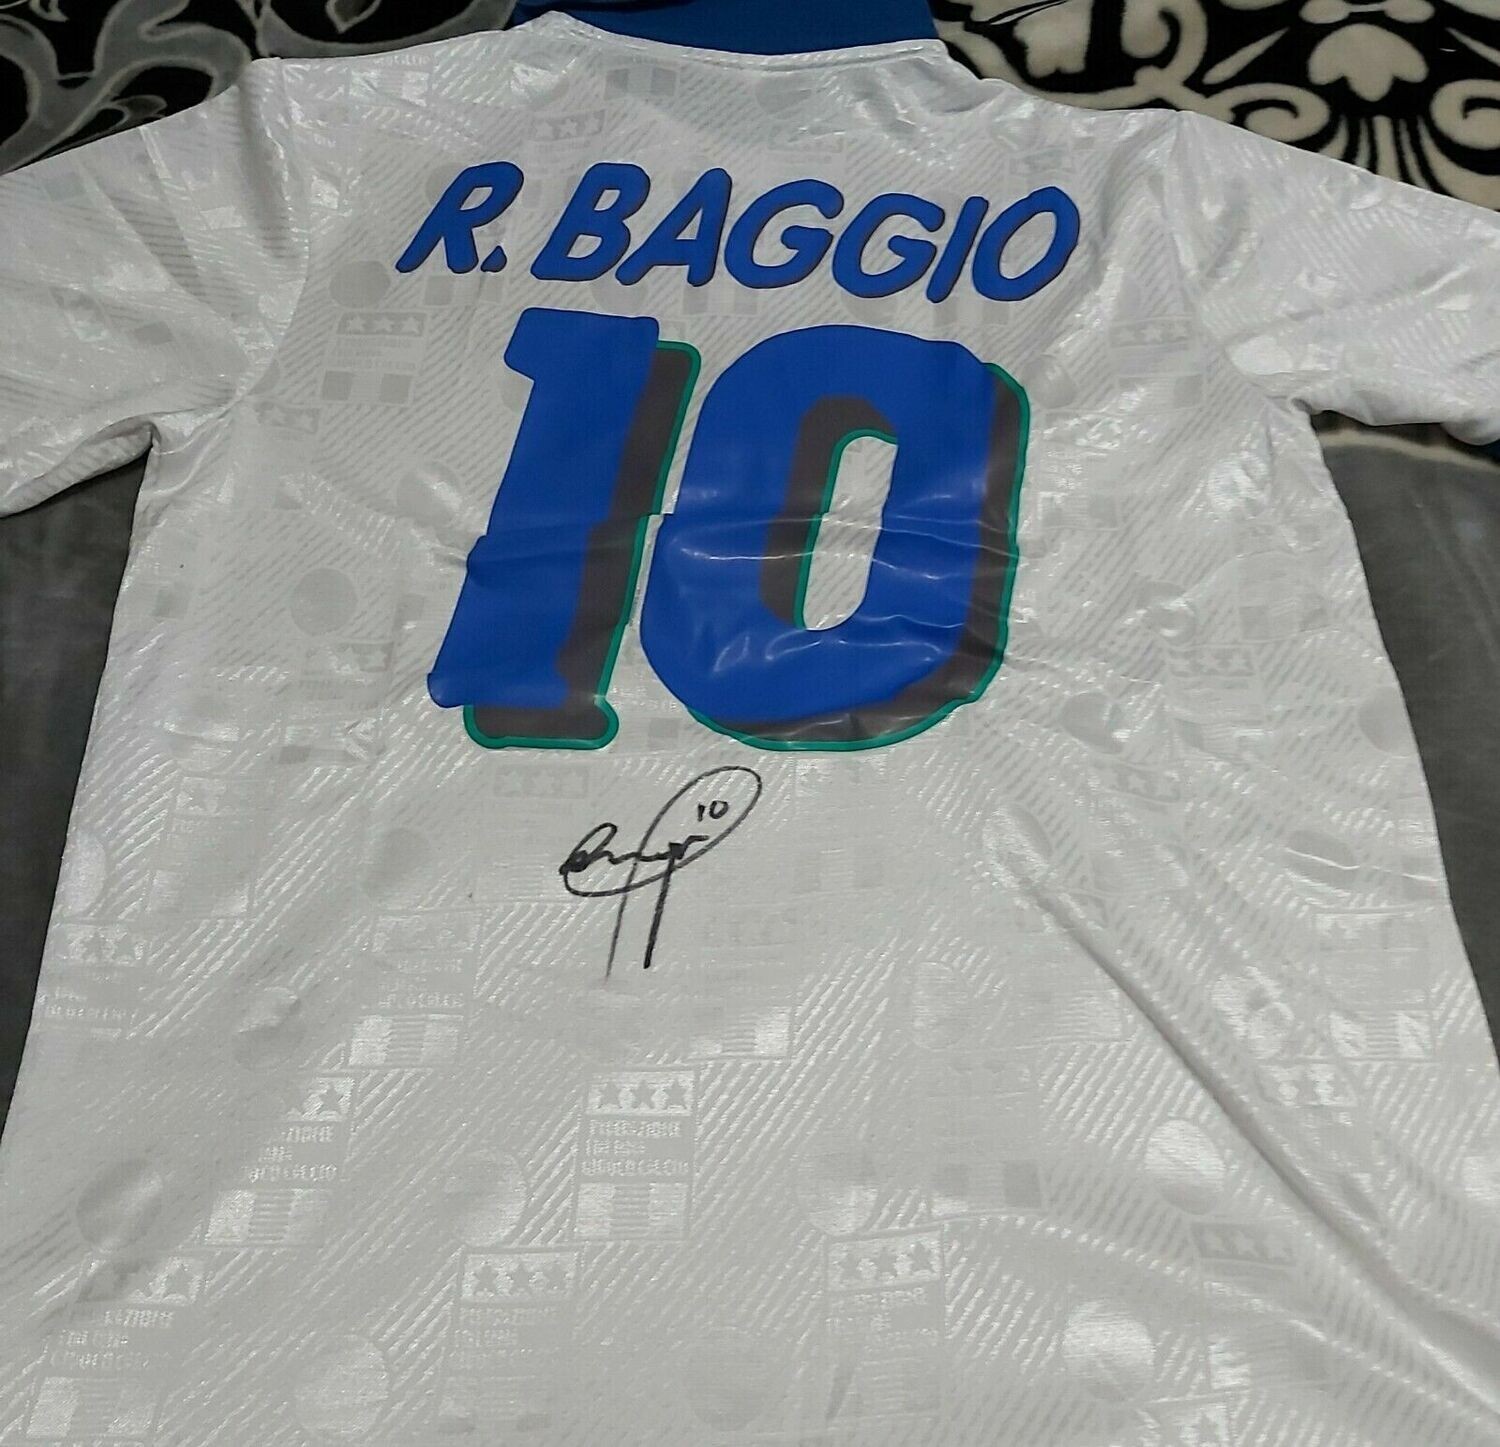 Maglia ITALIA ROBERTO BAGGIO  Autografata Signed wich COA certificate Italy ROBERTO BAGGIO   Signed with coa